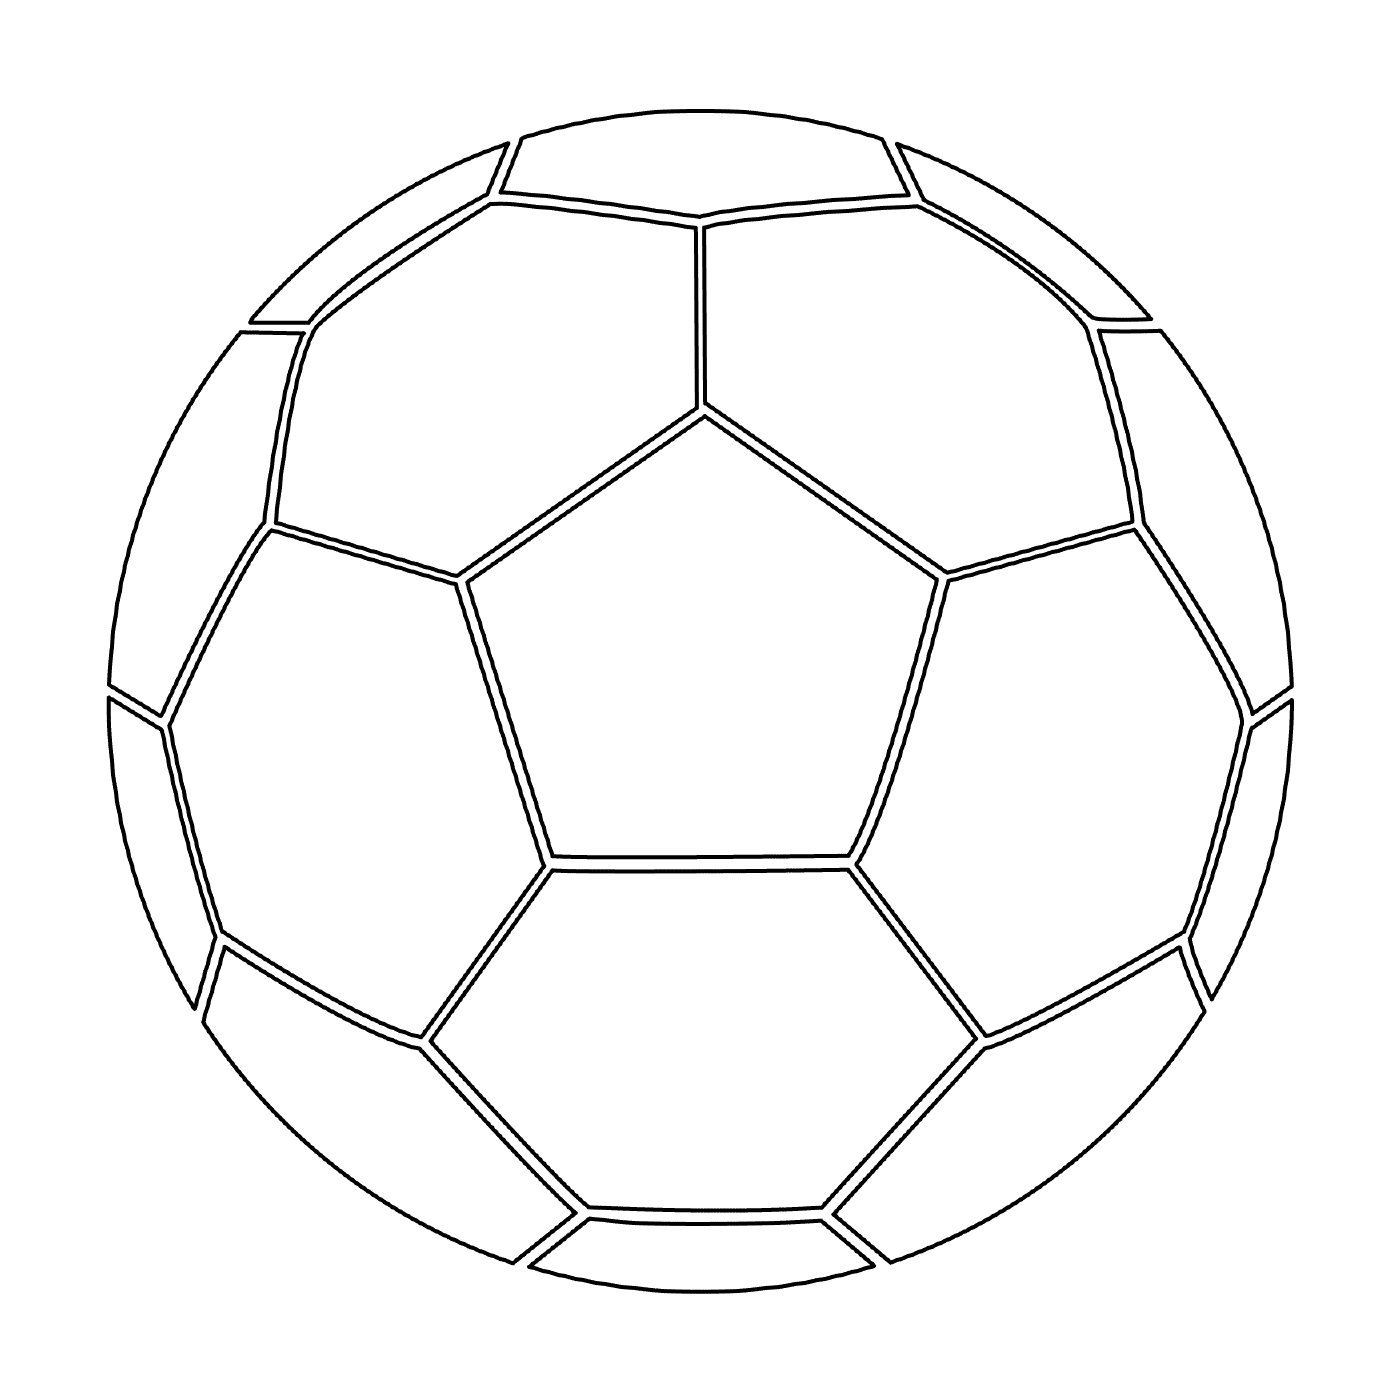   Un ballon de soccer 